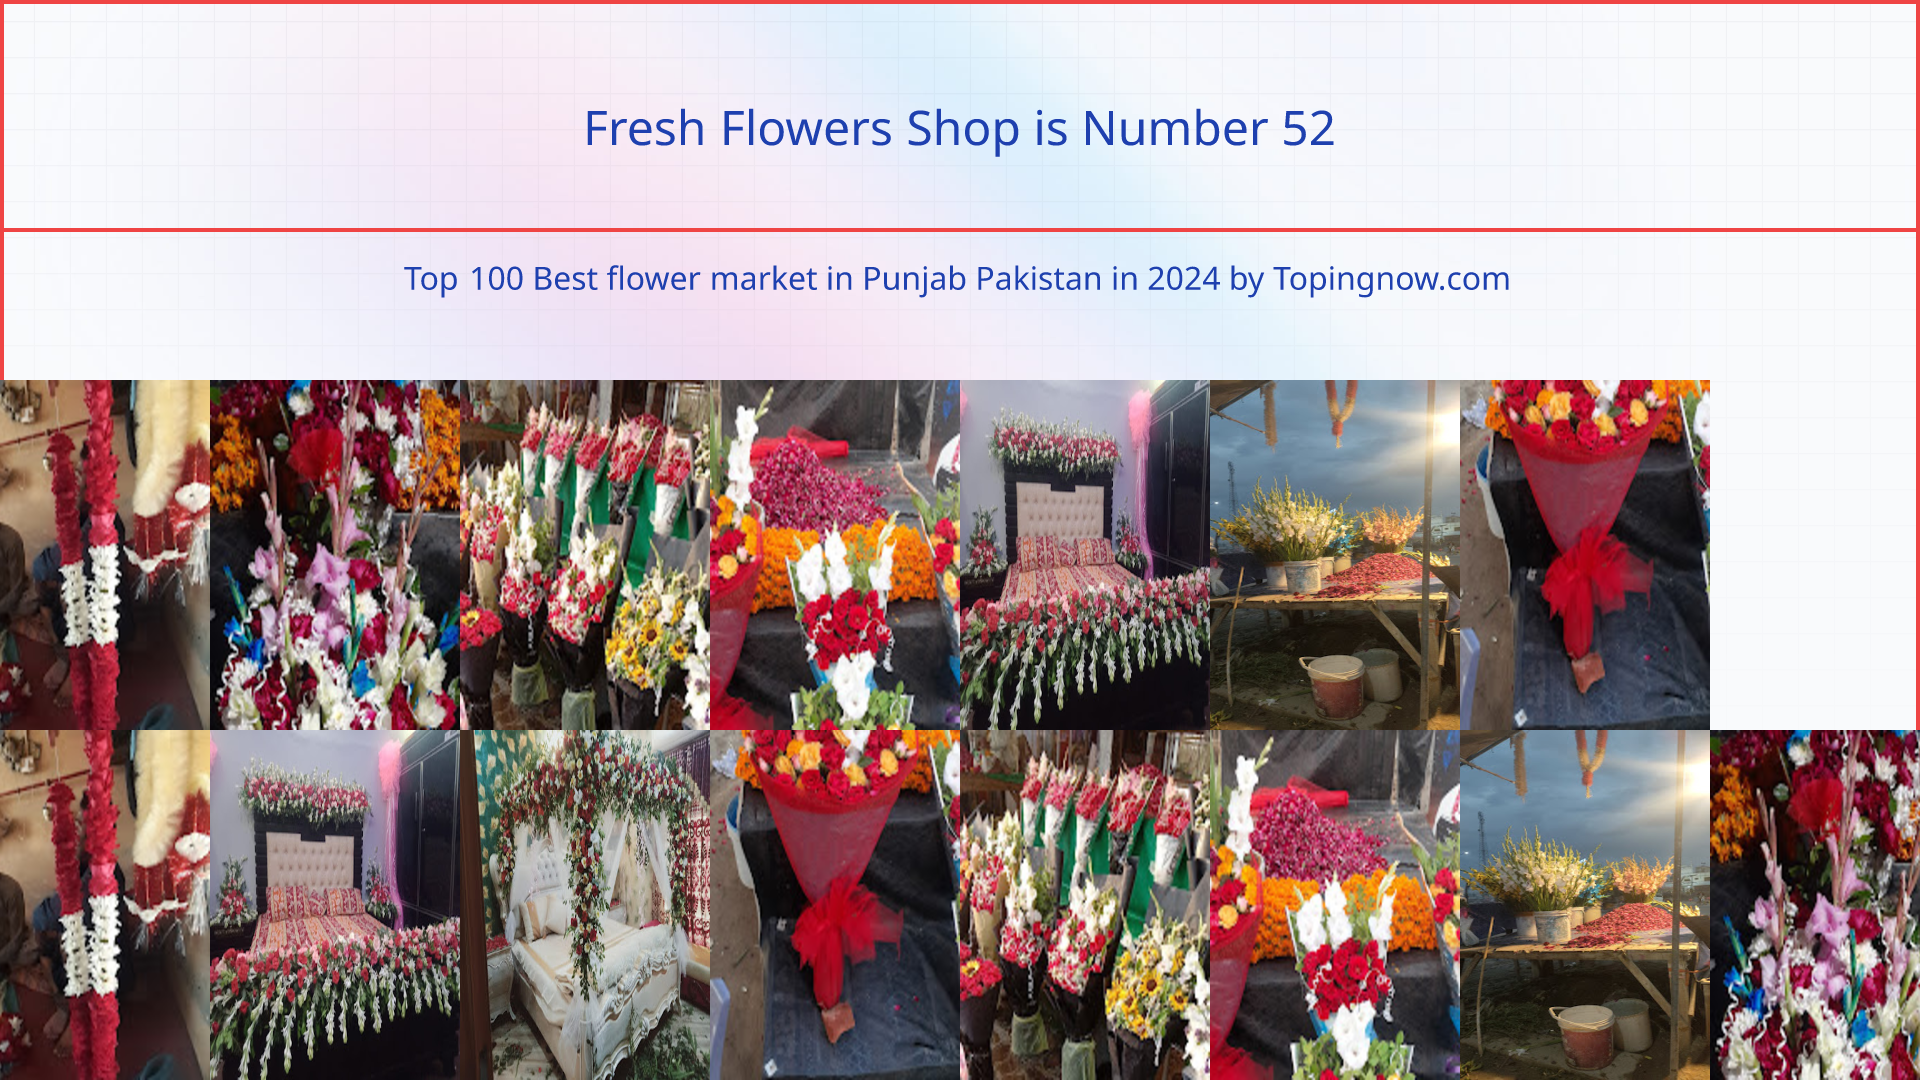 Fresh Flowers Shop: Top 100 Best flower market in Punjab Pakistan in 2024